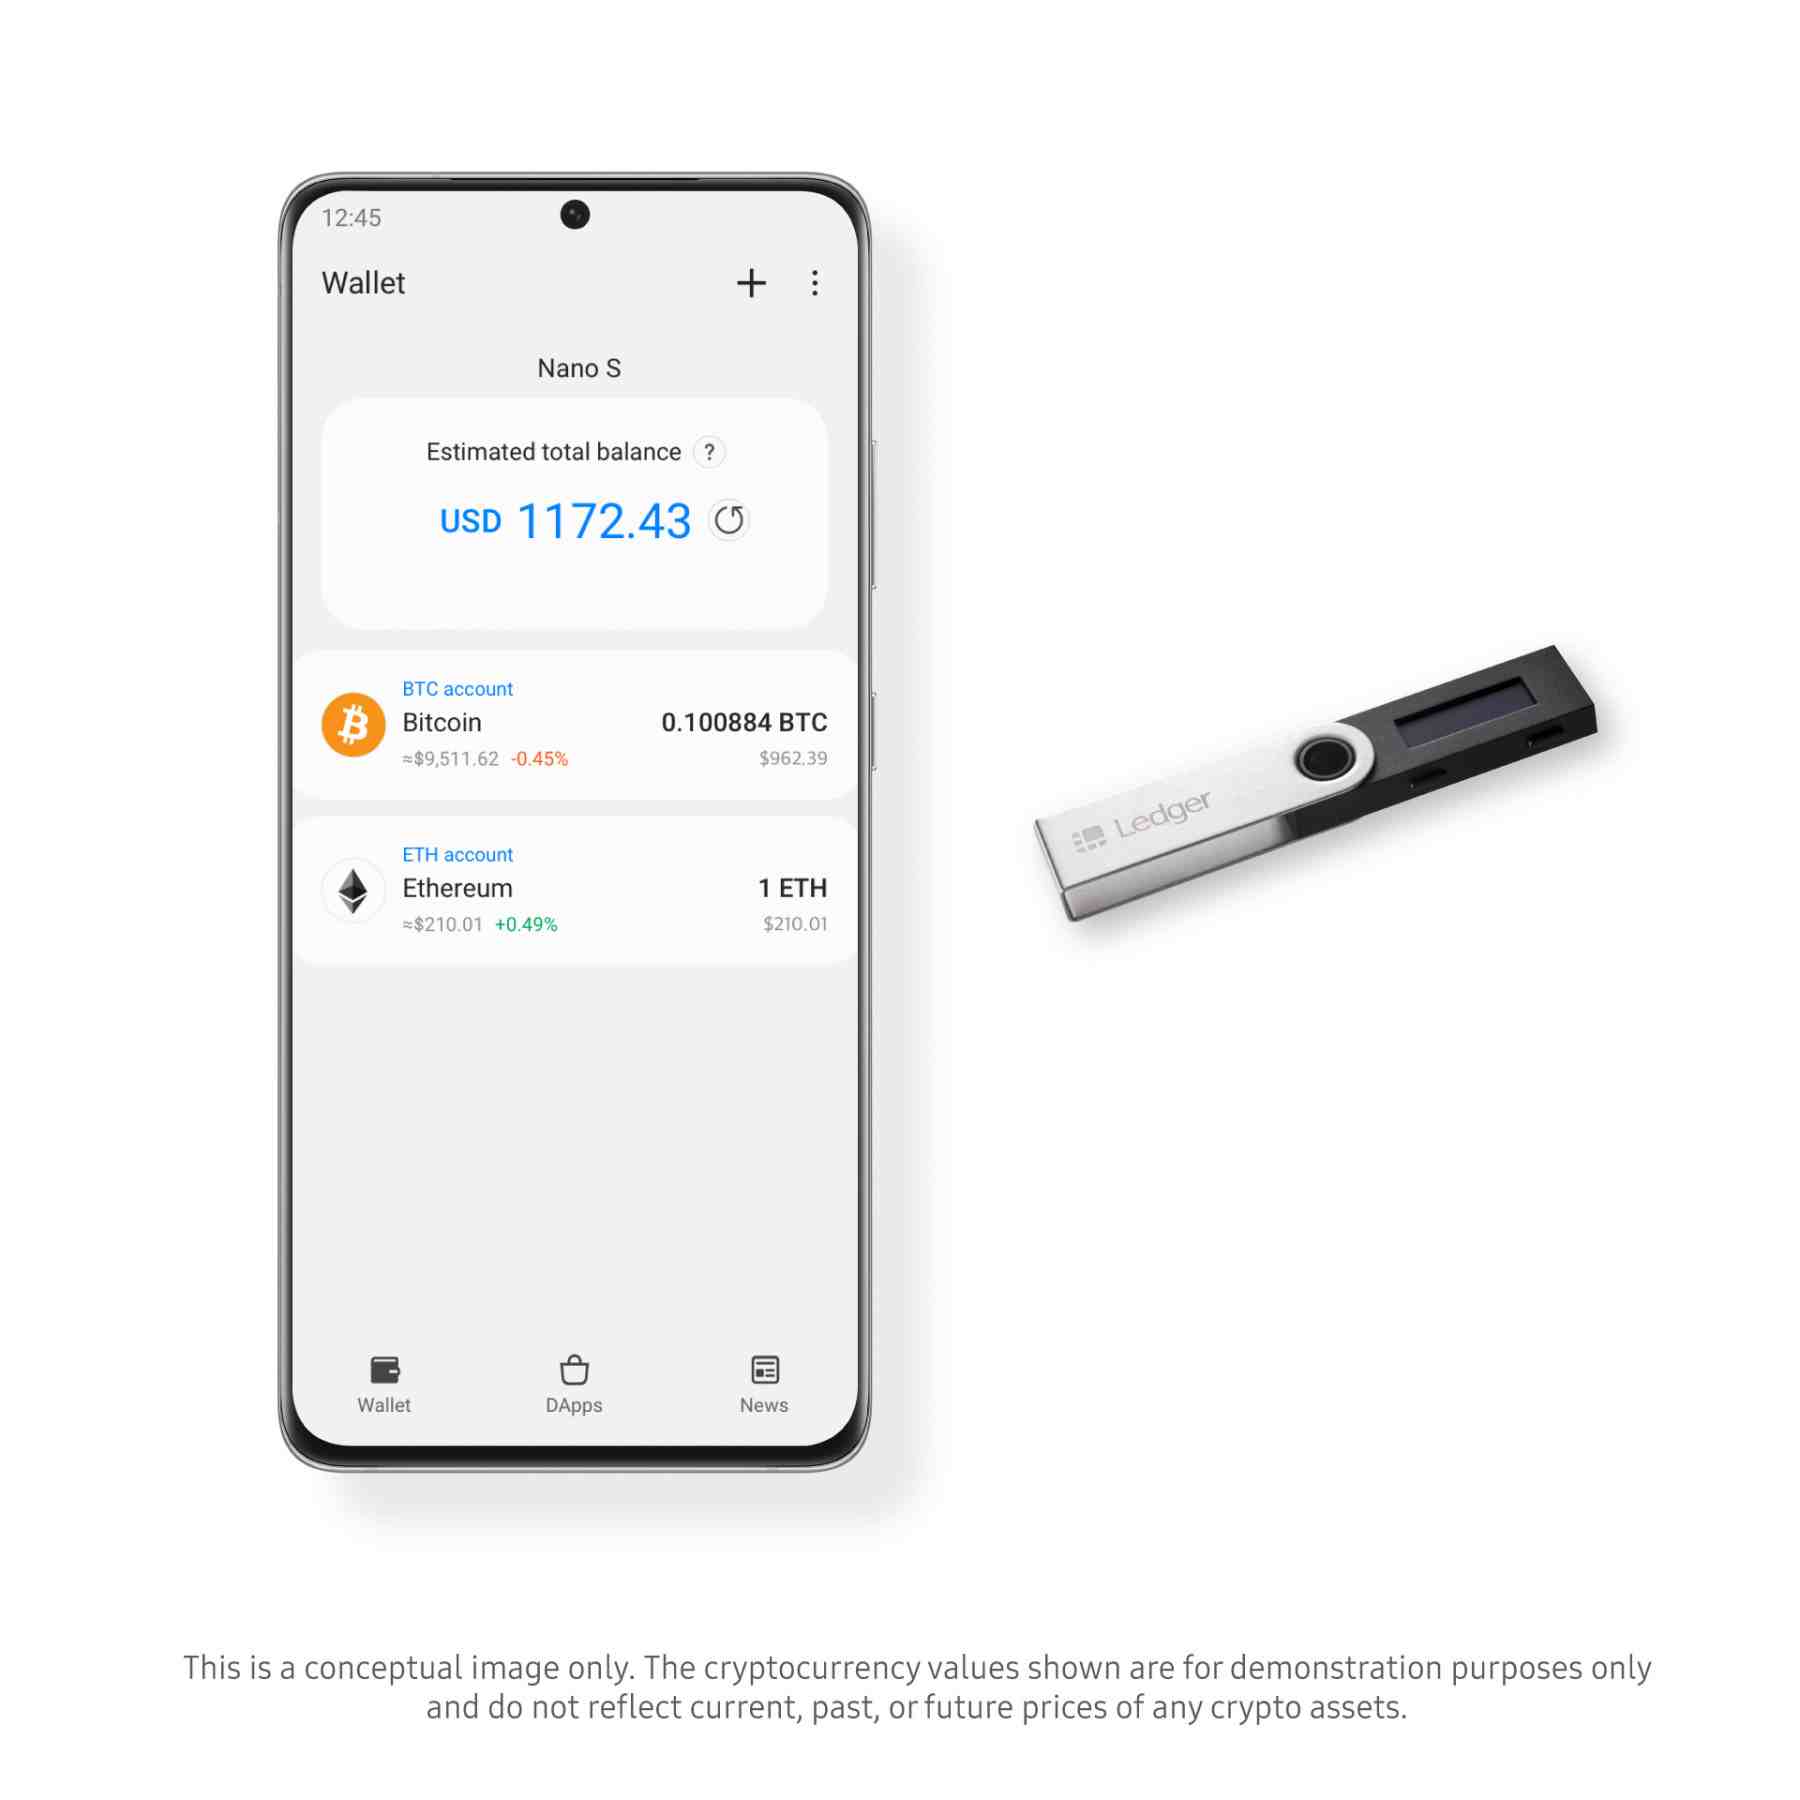 Samsung Blockchain Wallet & Ledger Nano S